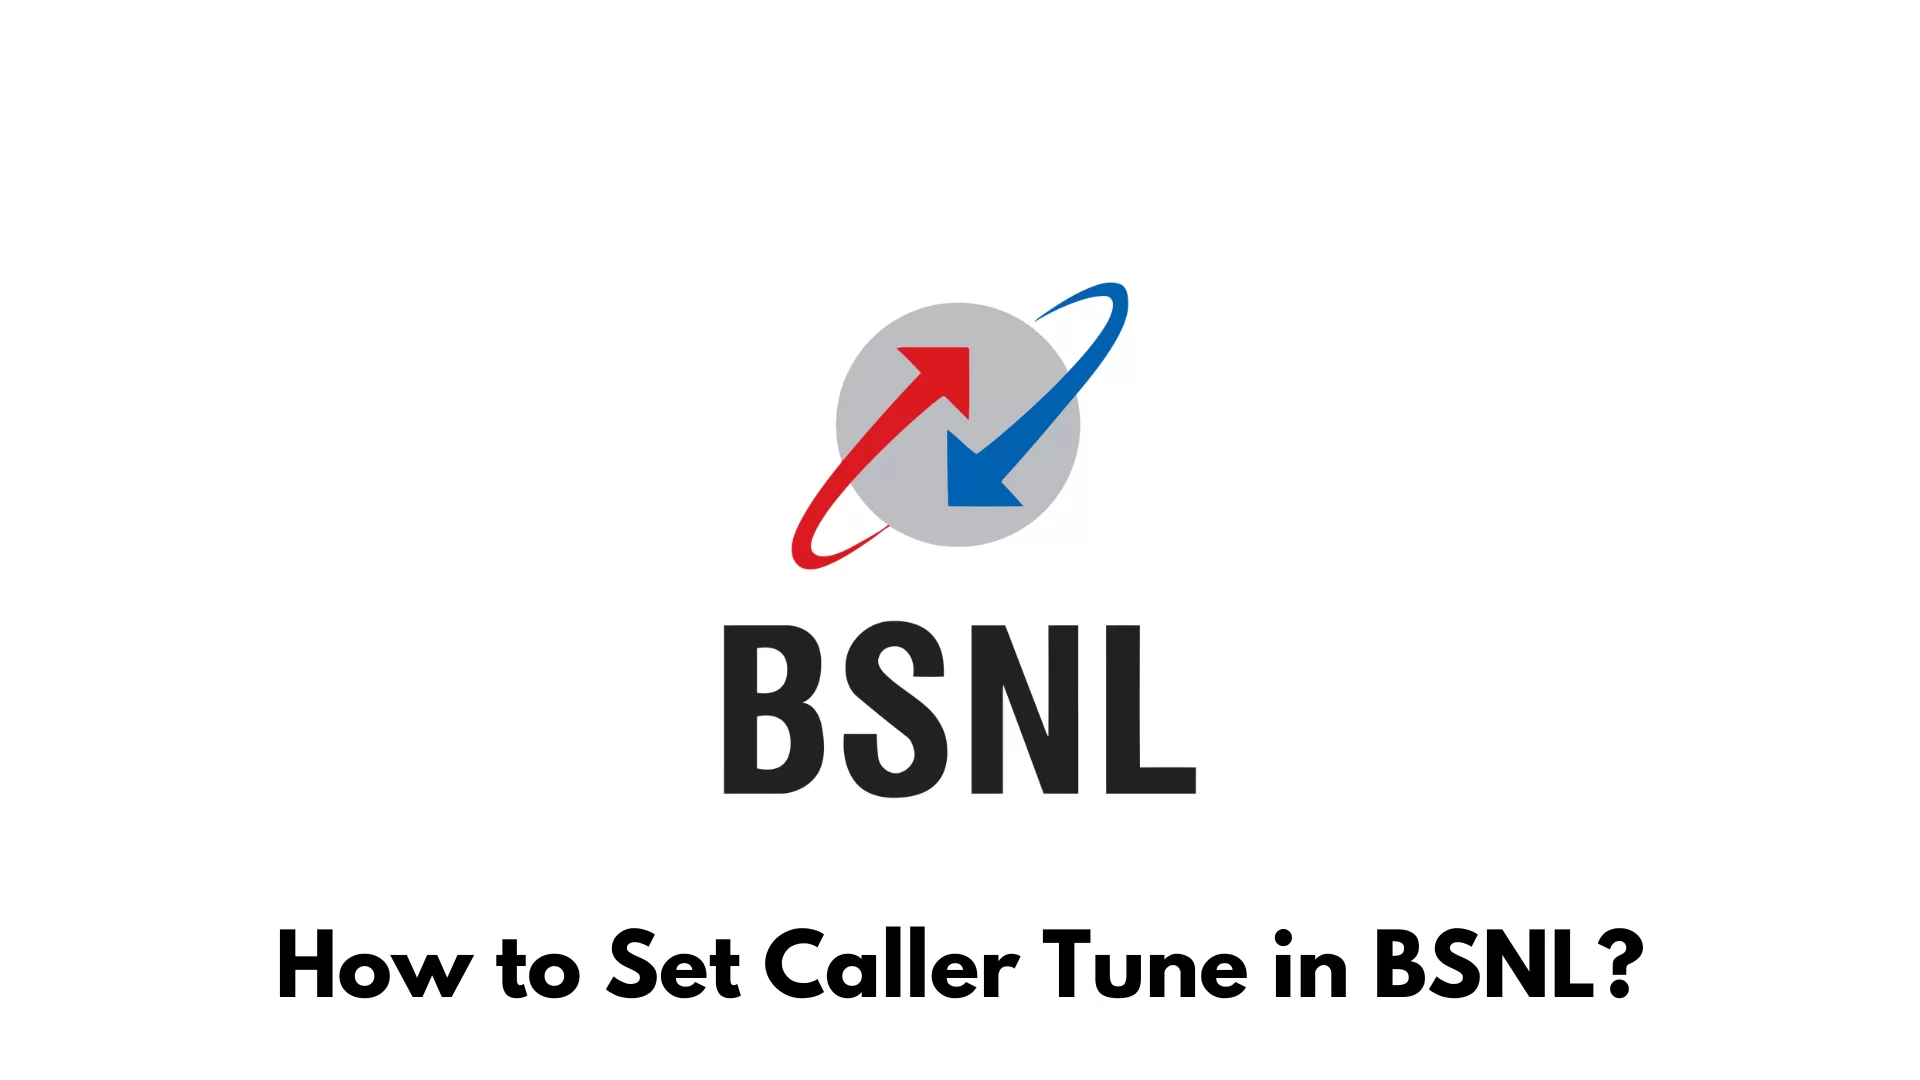 How to Set Caller Tune in BSNL?